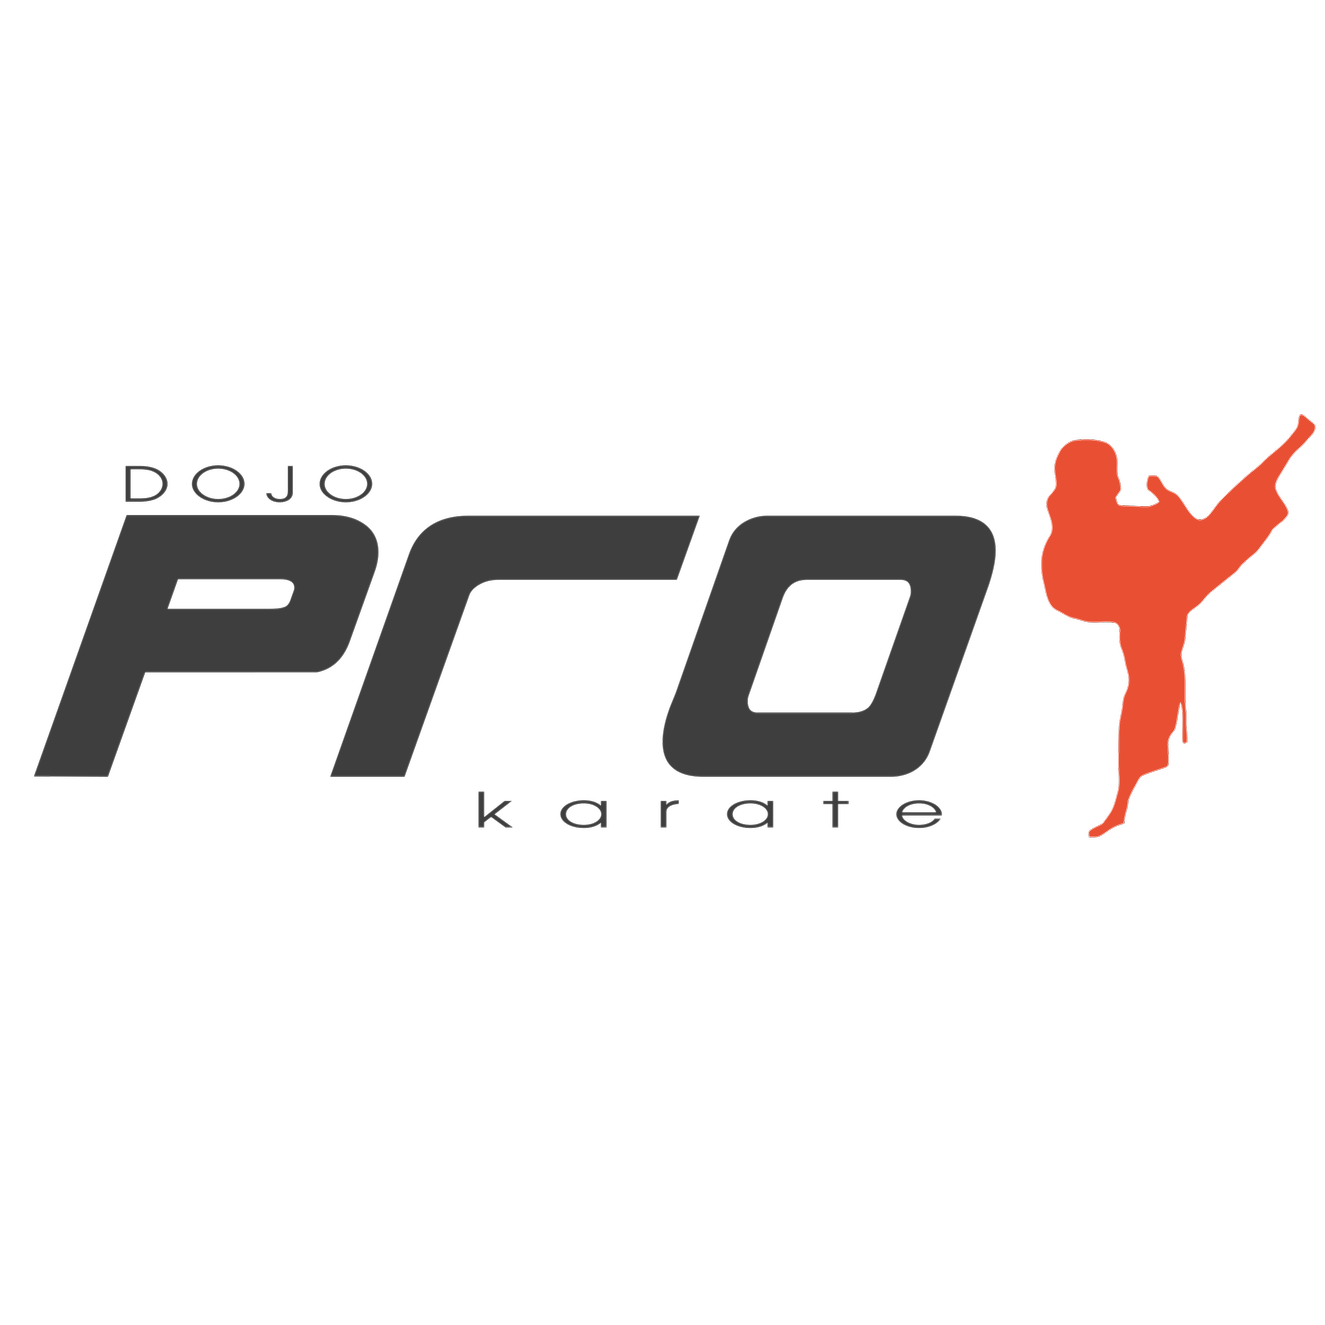 Dojo Prokarate Logo